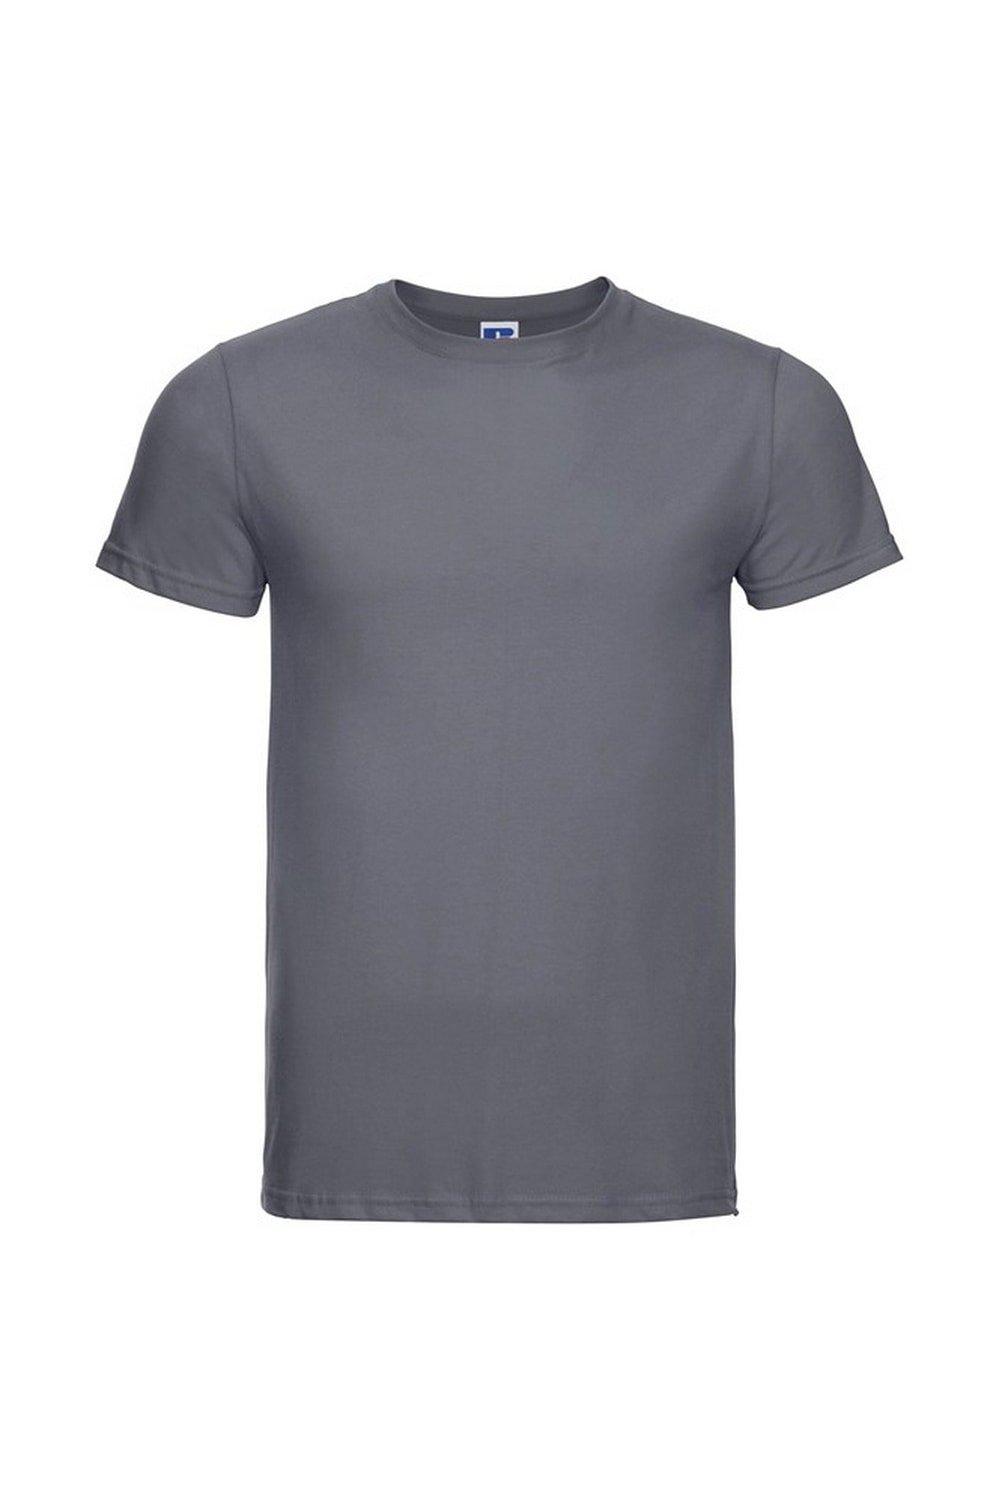 цена Легкая тонкая футболка Russell, серый